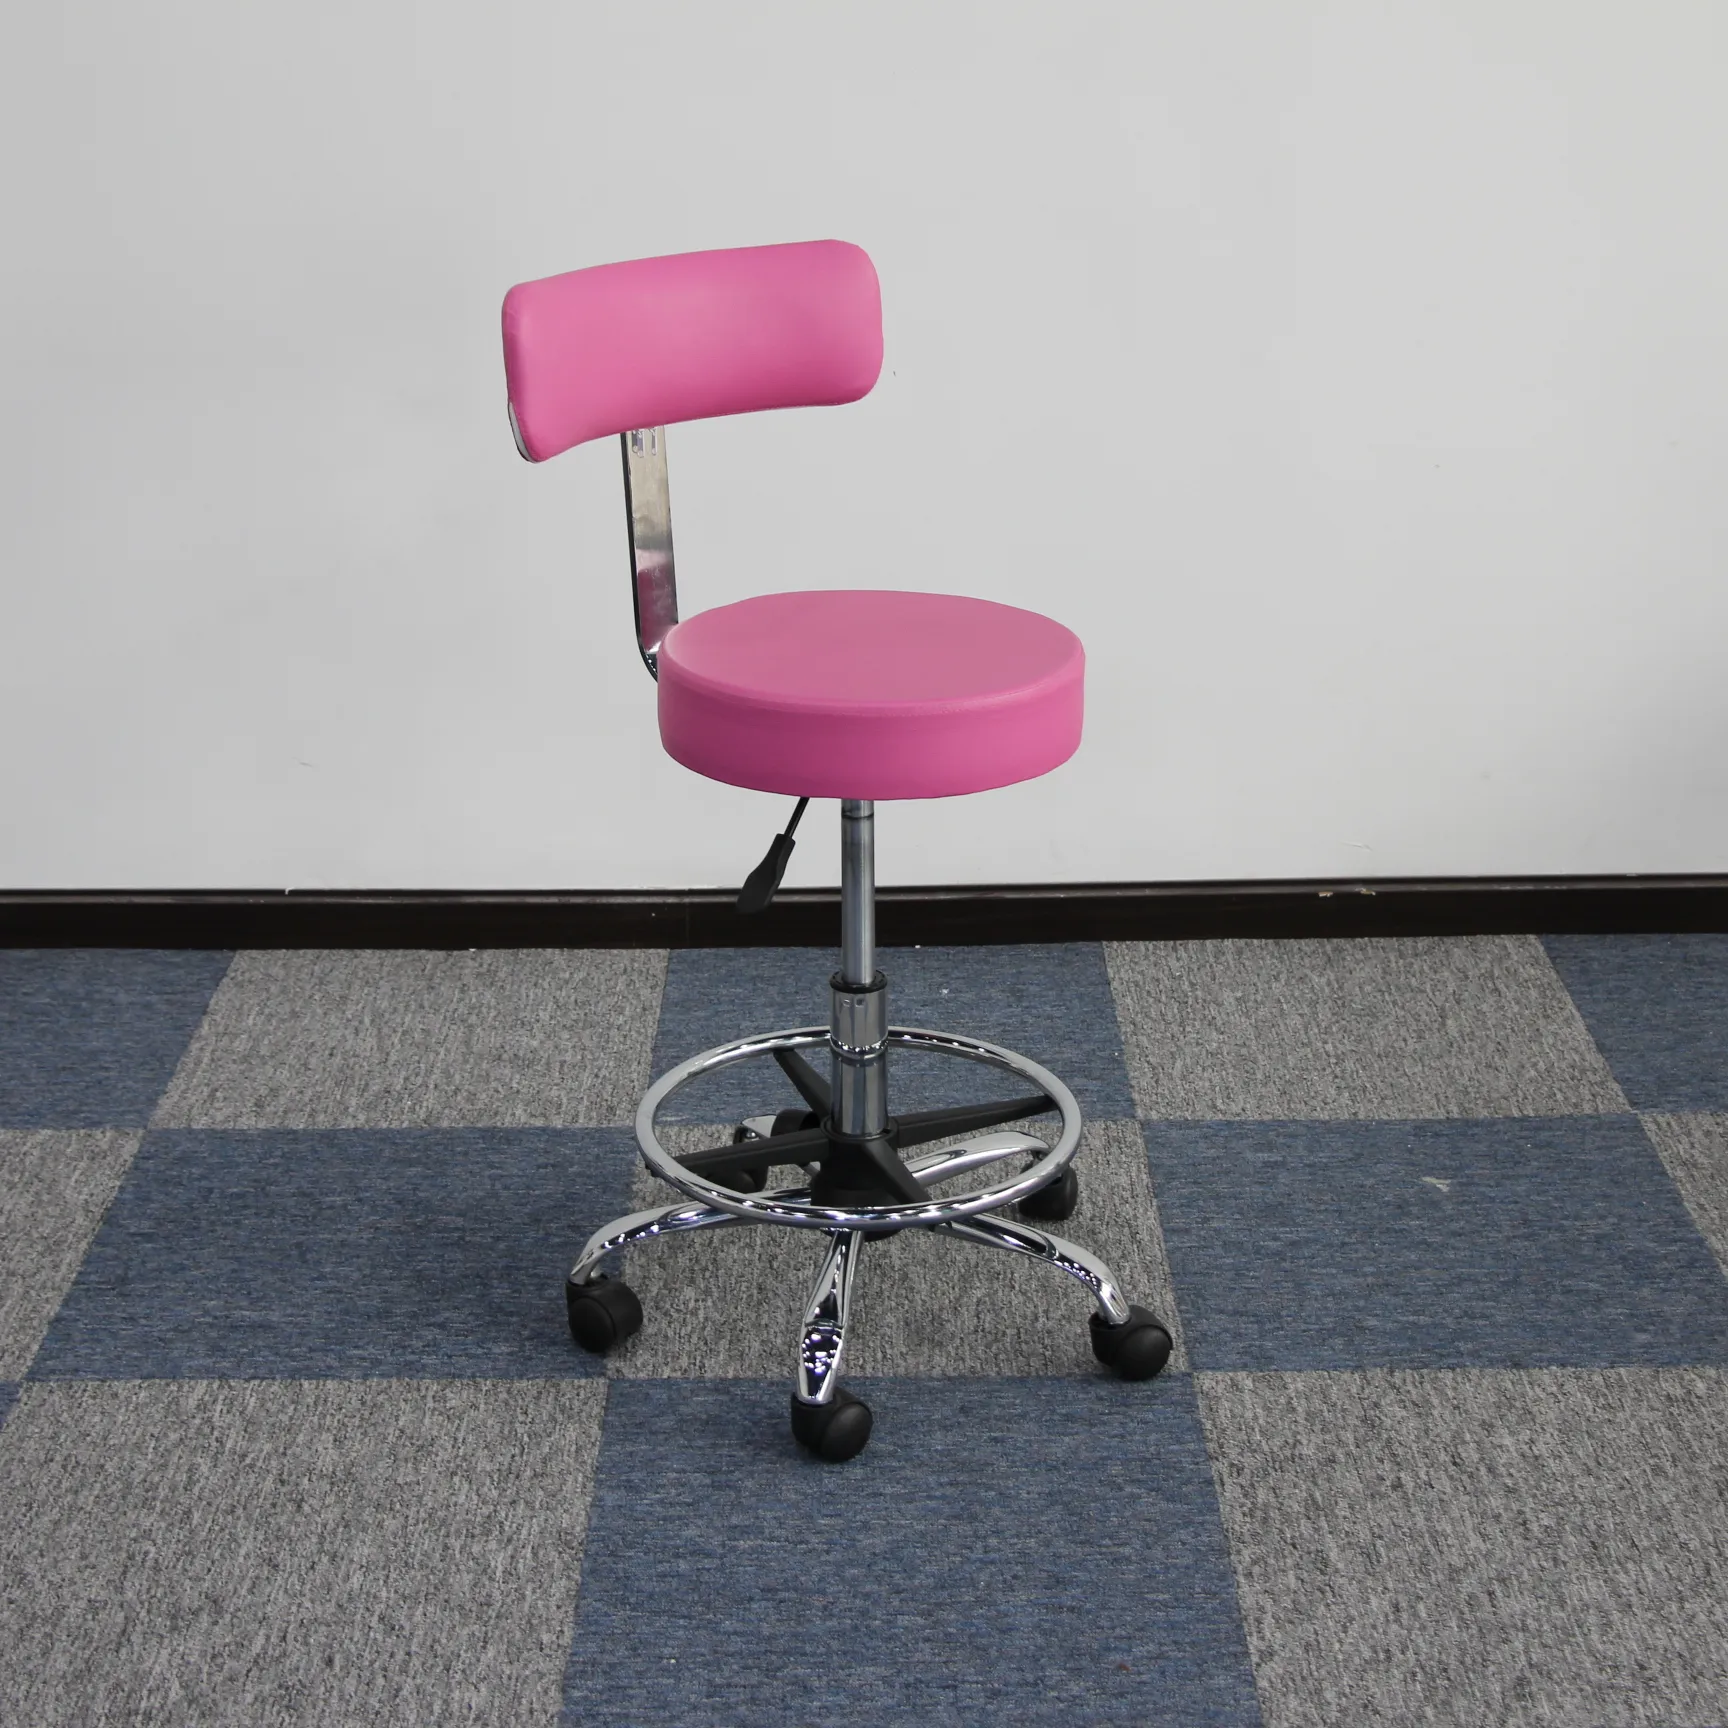 เก้าอี้สตูลสำหรับทำเล็บสีชมพู,เก้าอี้หมุนได้ปรับความสูงได้